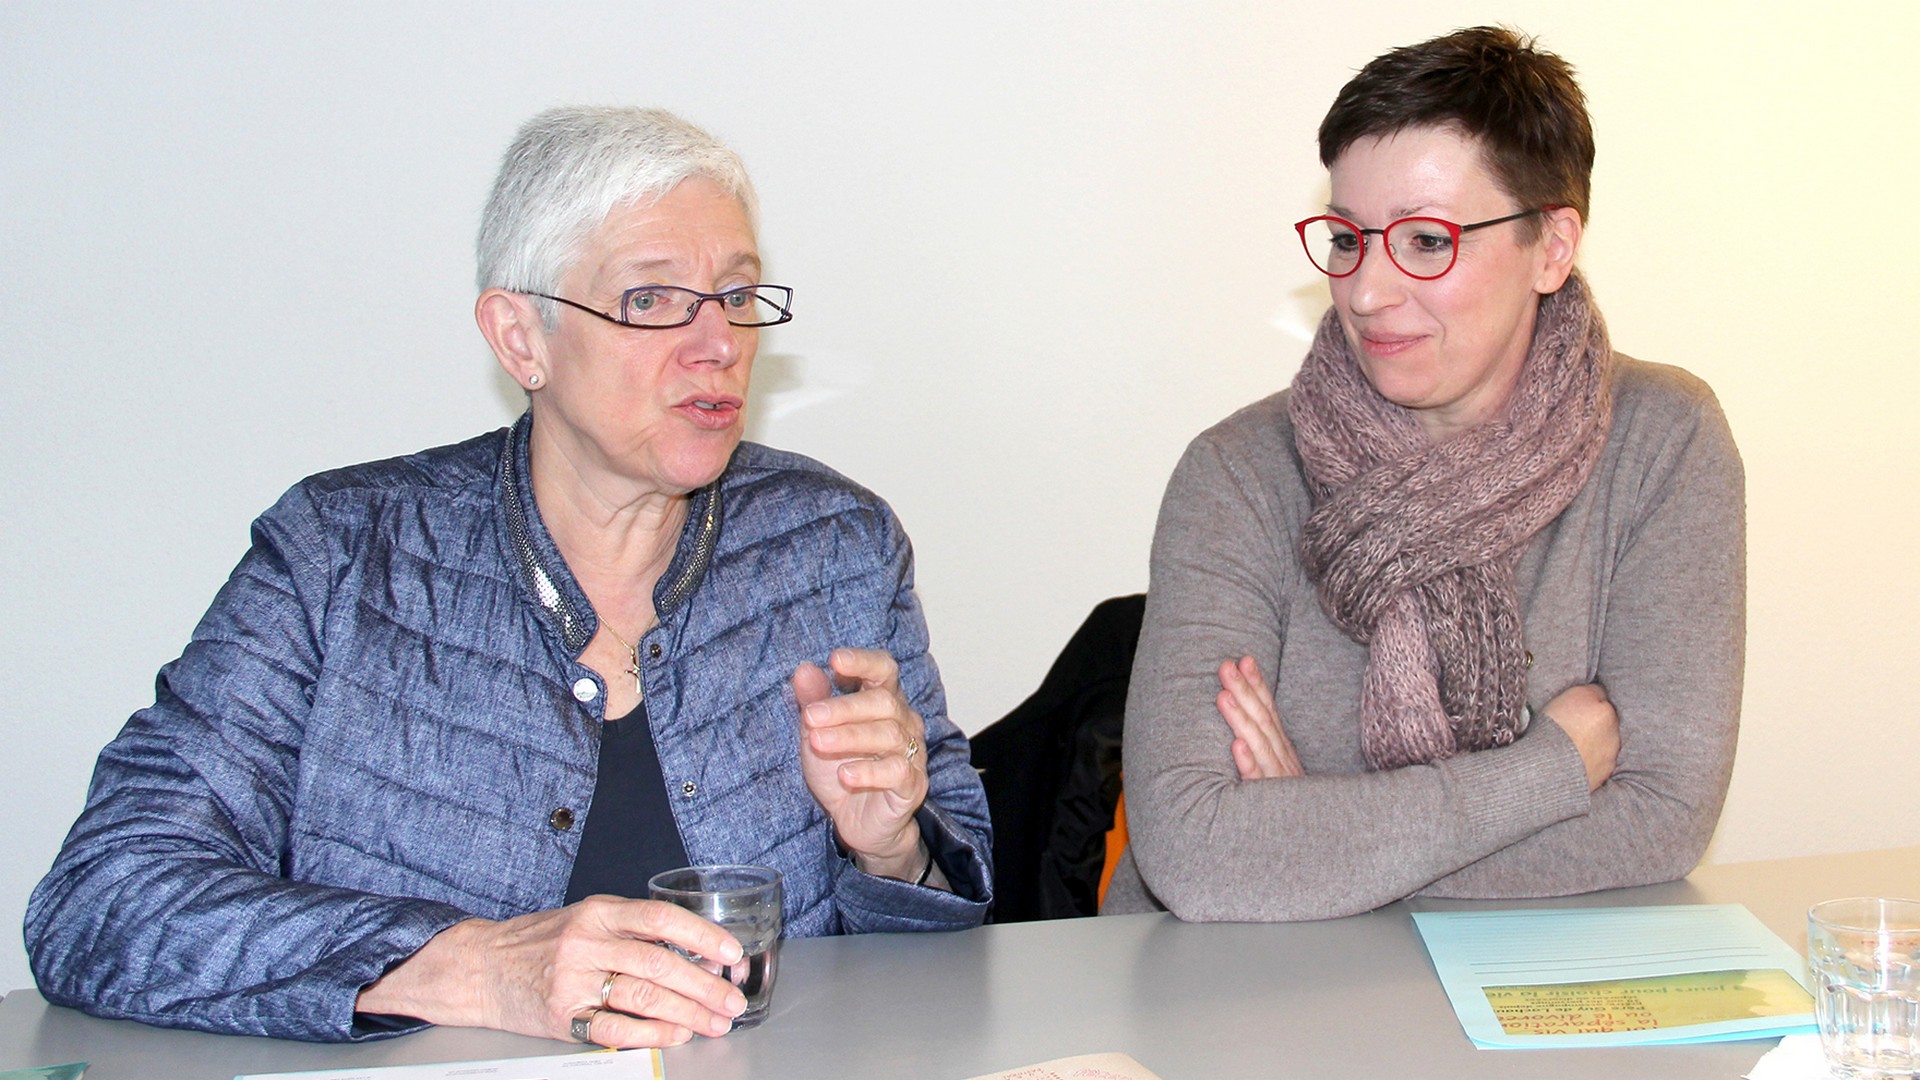 Marie-Josèphe Lachat et Nathalie Jolissaint (à droite) au Centre Saint-François, lors de la présentation du nouveau programme de formation 2016 du Service du cheminement de la foi. (Photo SIC)

